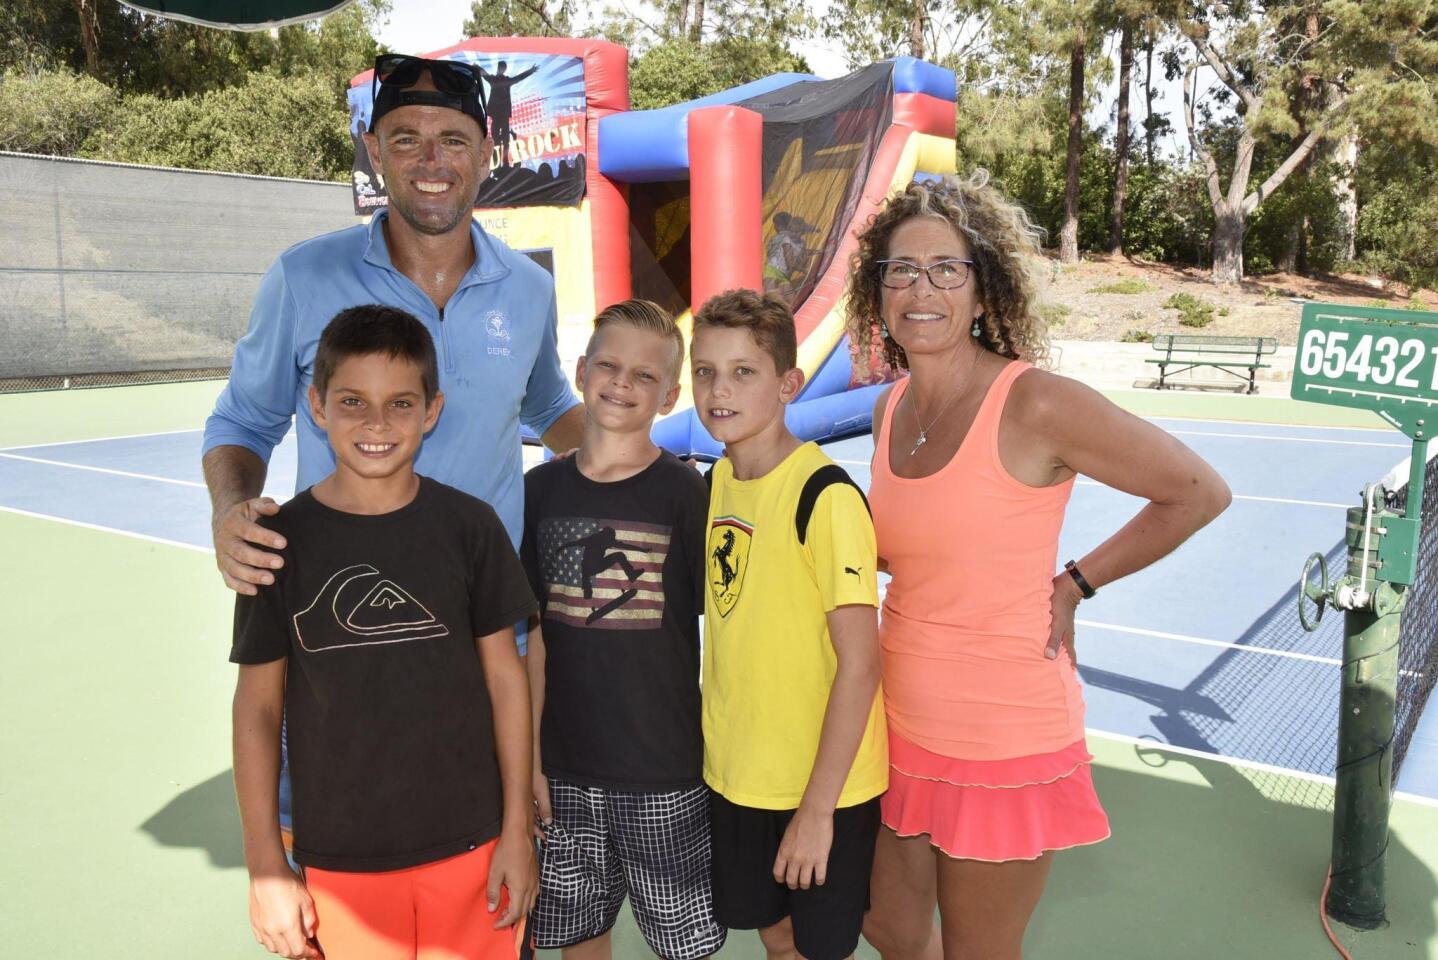 Head tennis pro Derek Miller with his sons Blake and Logan, friend/tennis student Sasha, event coordinator Birgitte Bradshaw